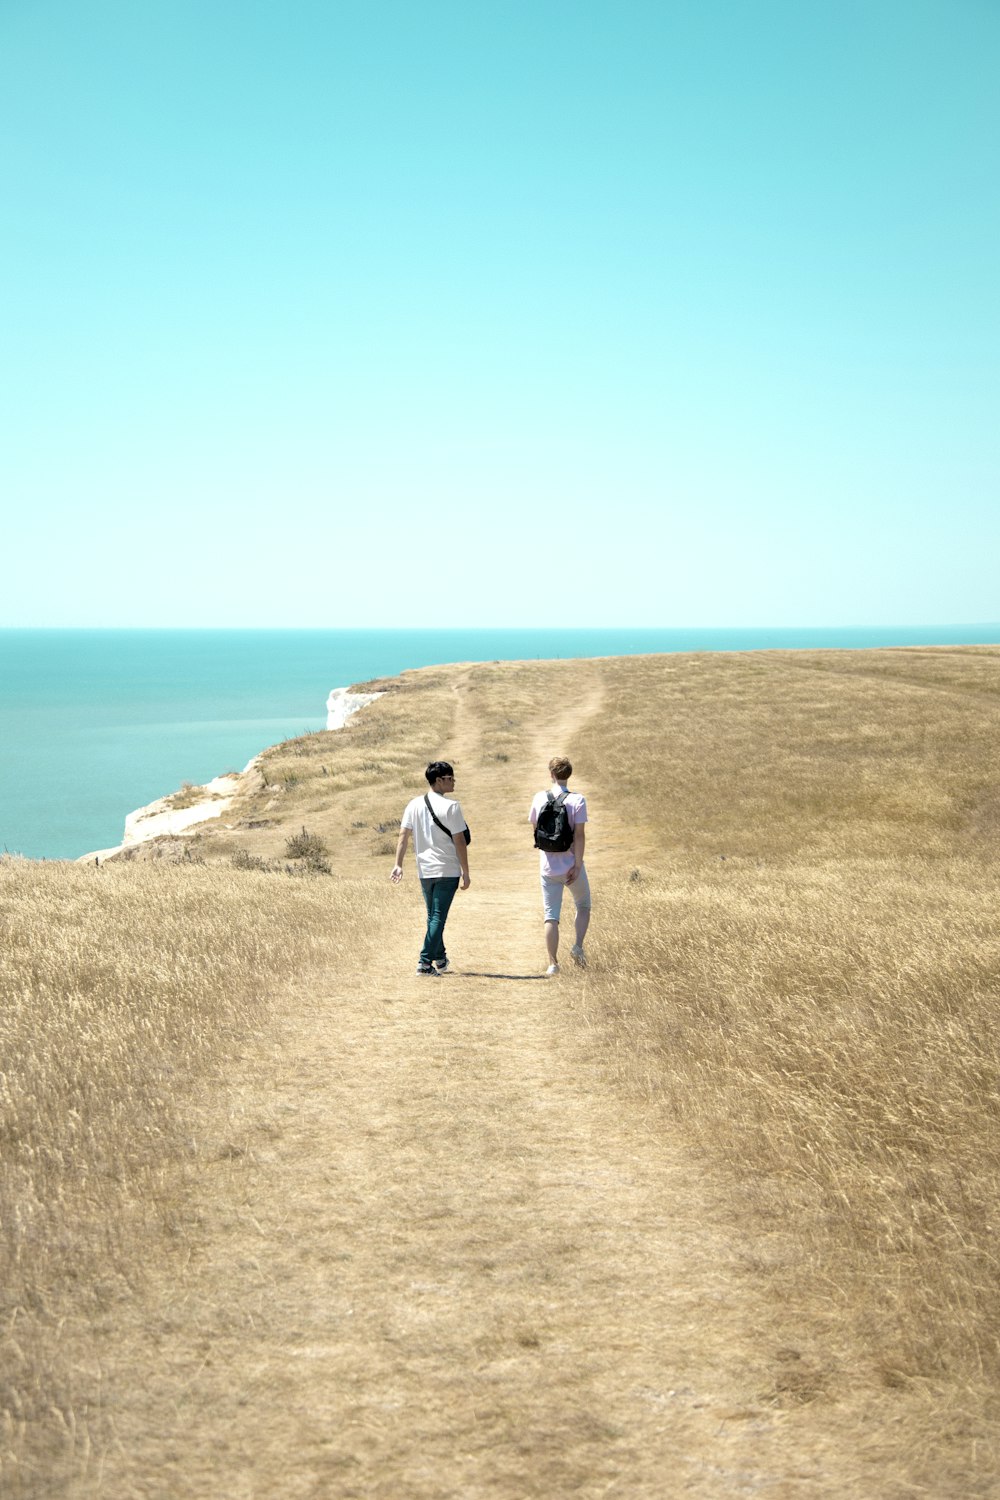 2 hommes et une femme debout sur une formation rocheuse brune près de la mer bleue pendant la journée